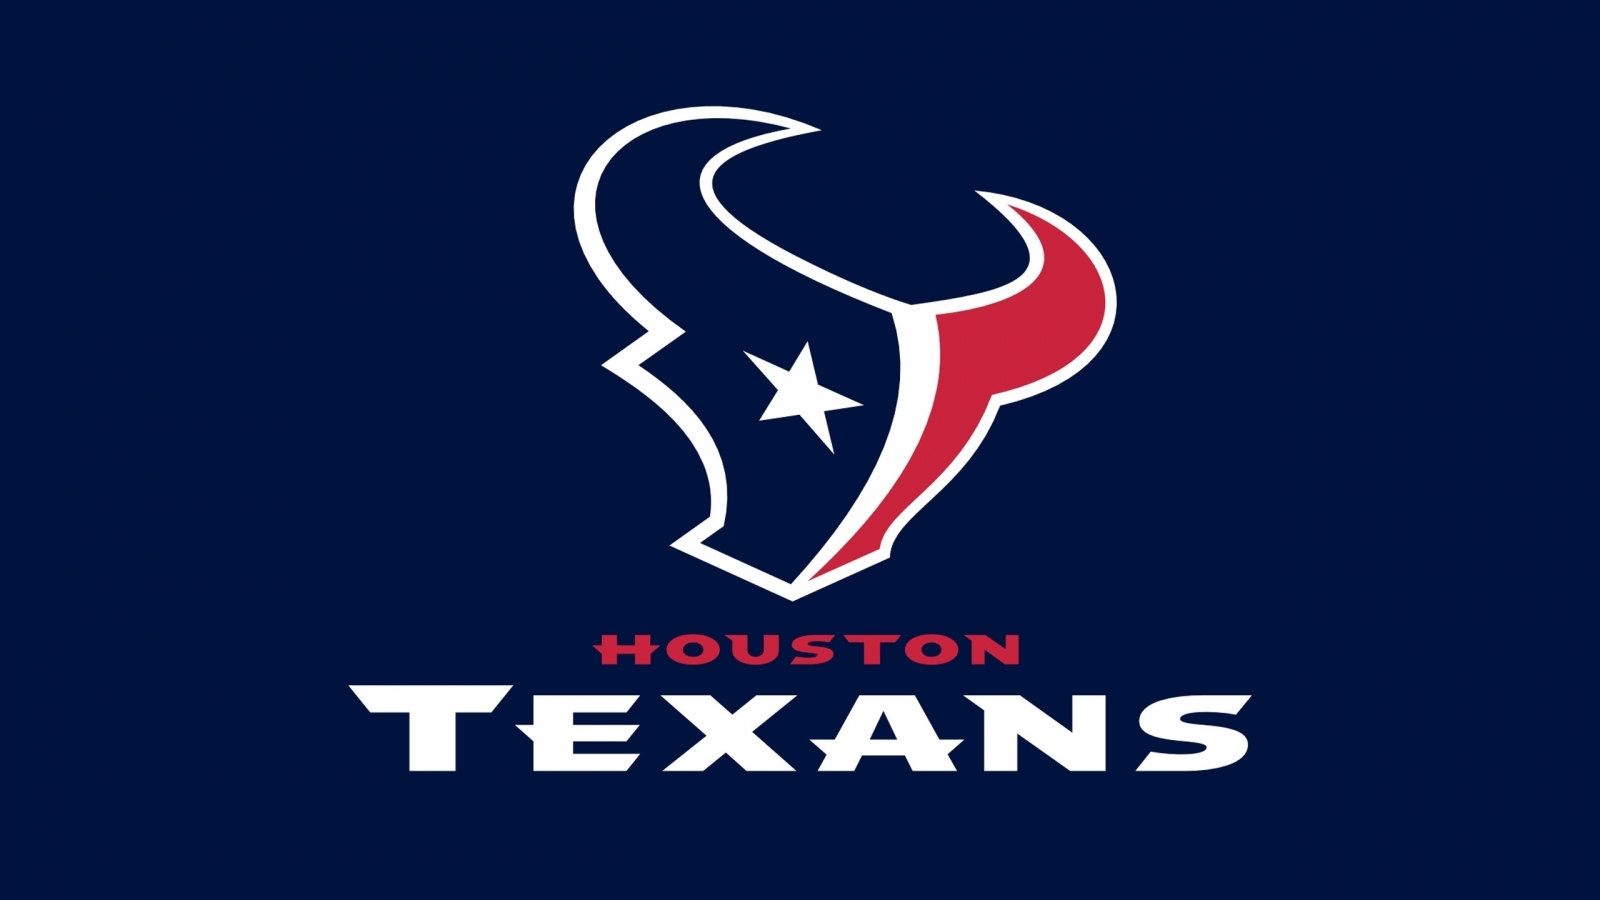 Houston Texans Logo for 1600 x 900 HDTV resolution